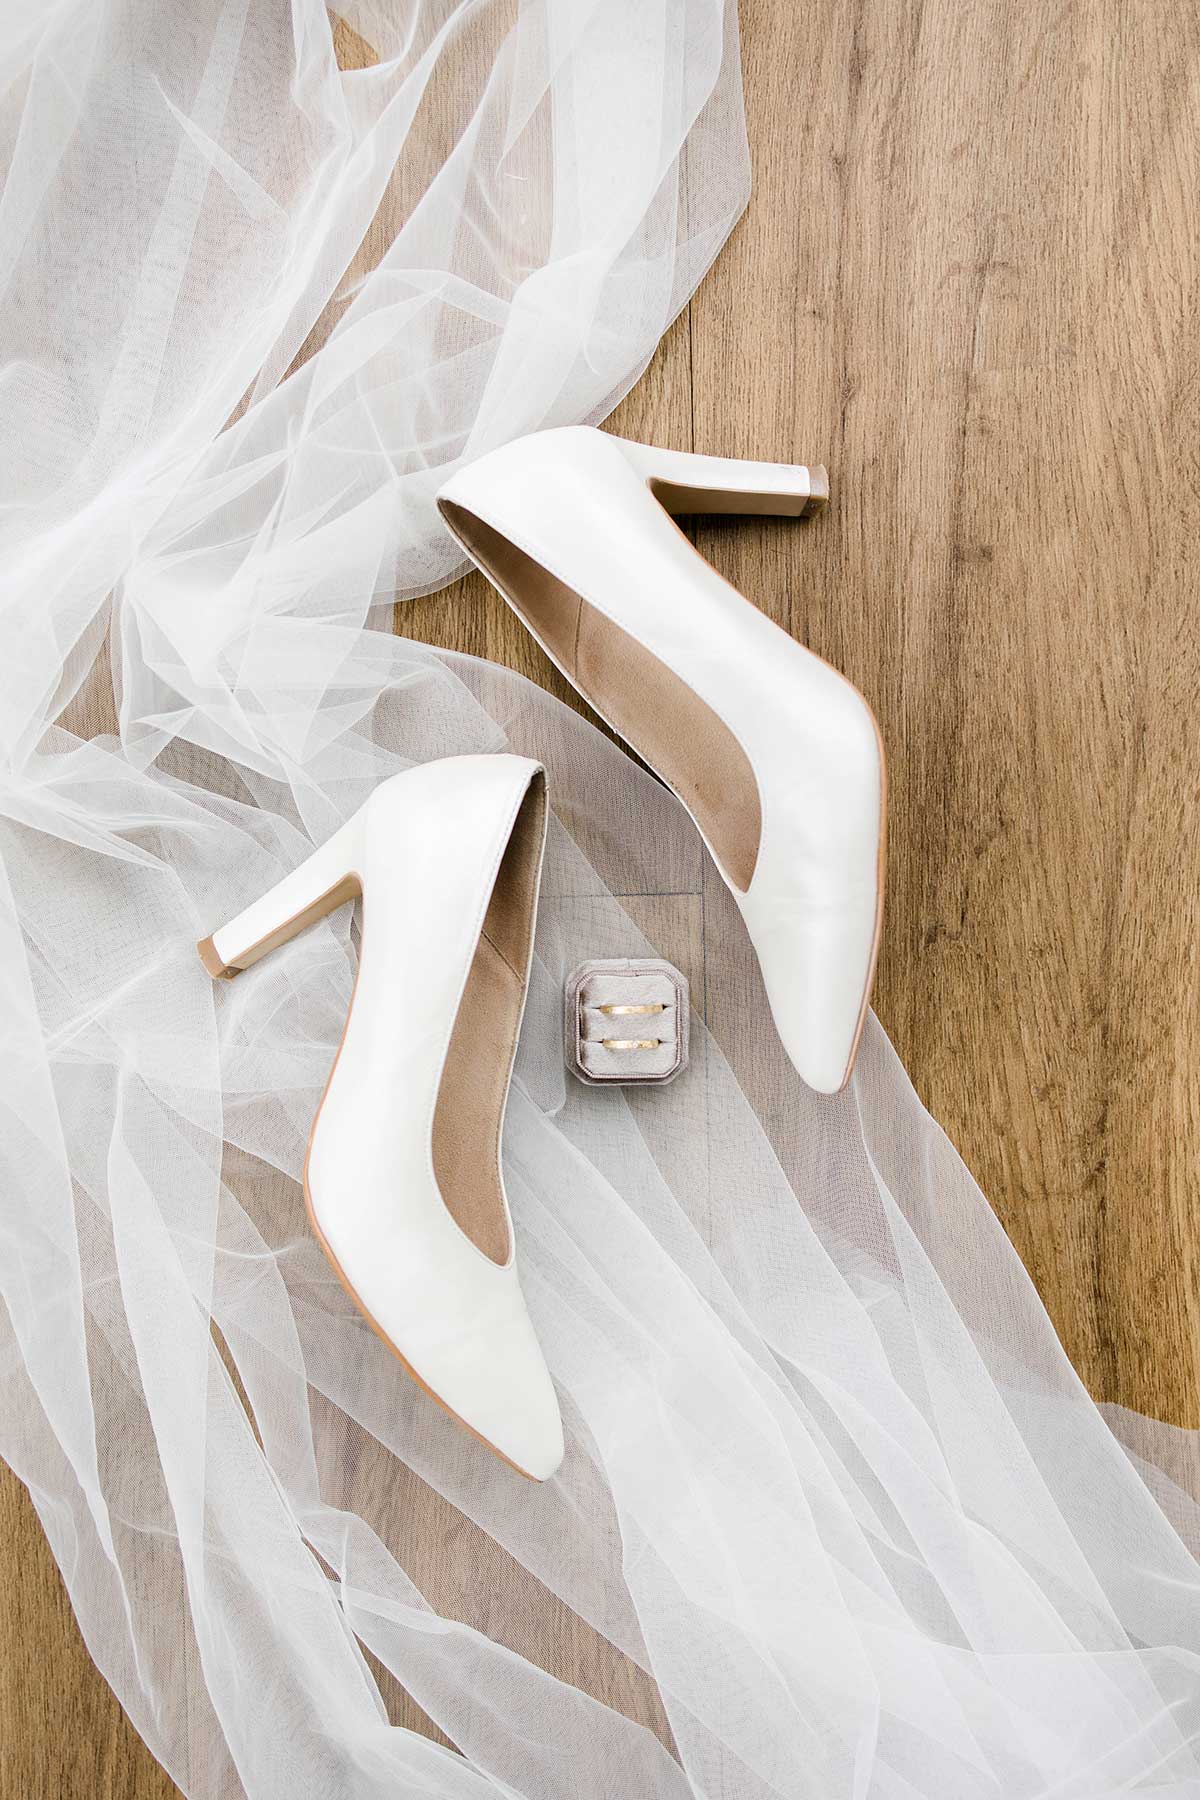 Schuhe der Braut liegen auf dem Schleier